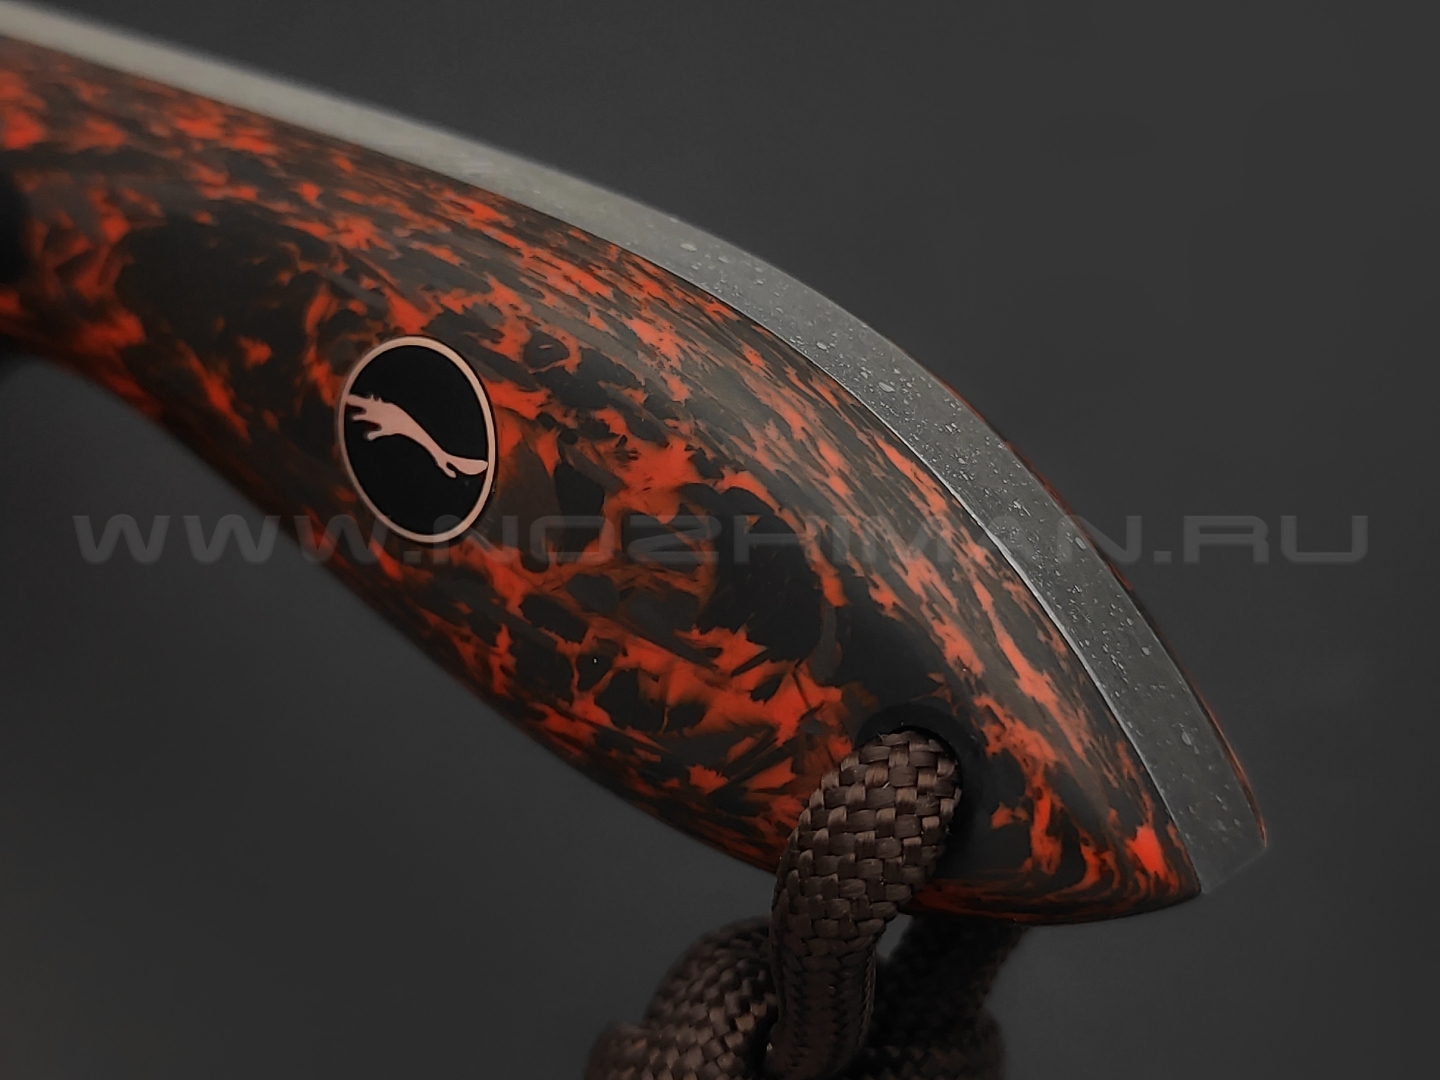 Волчий Век нож МасичЬка Custom Orc Edition сталь PGK WA травление, рукоять Carbon fiber chaotic orange